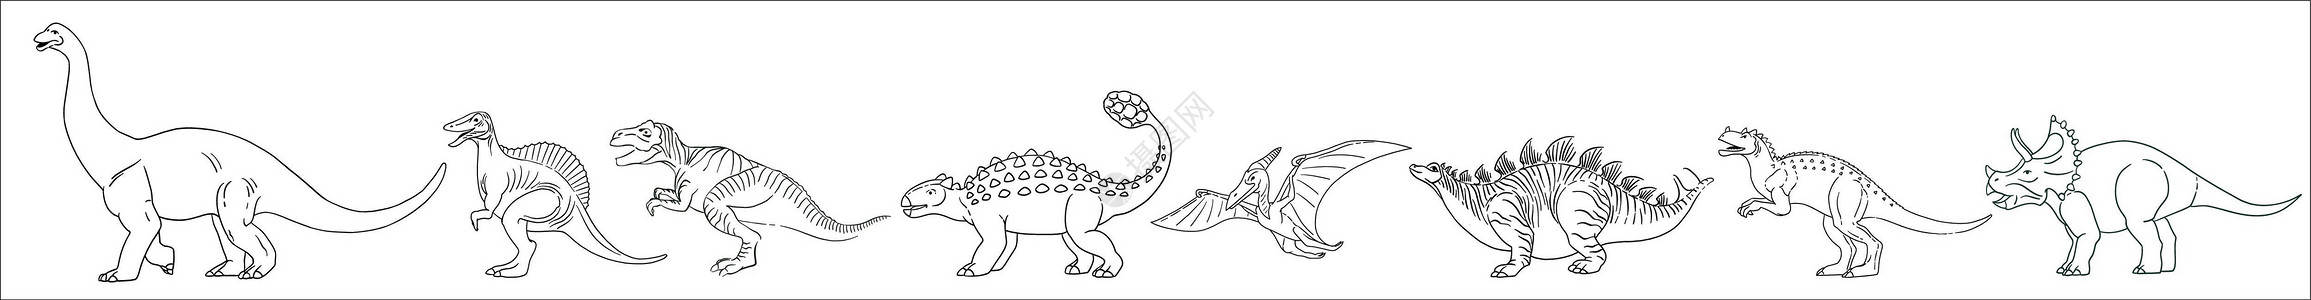 雷龙 无齿翼龙 三角龙 霸王龙 棘龙 剑龙 甲龙 异特龙 一组黑白相间的恐龙排成一排插画